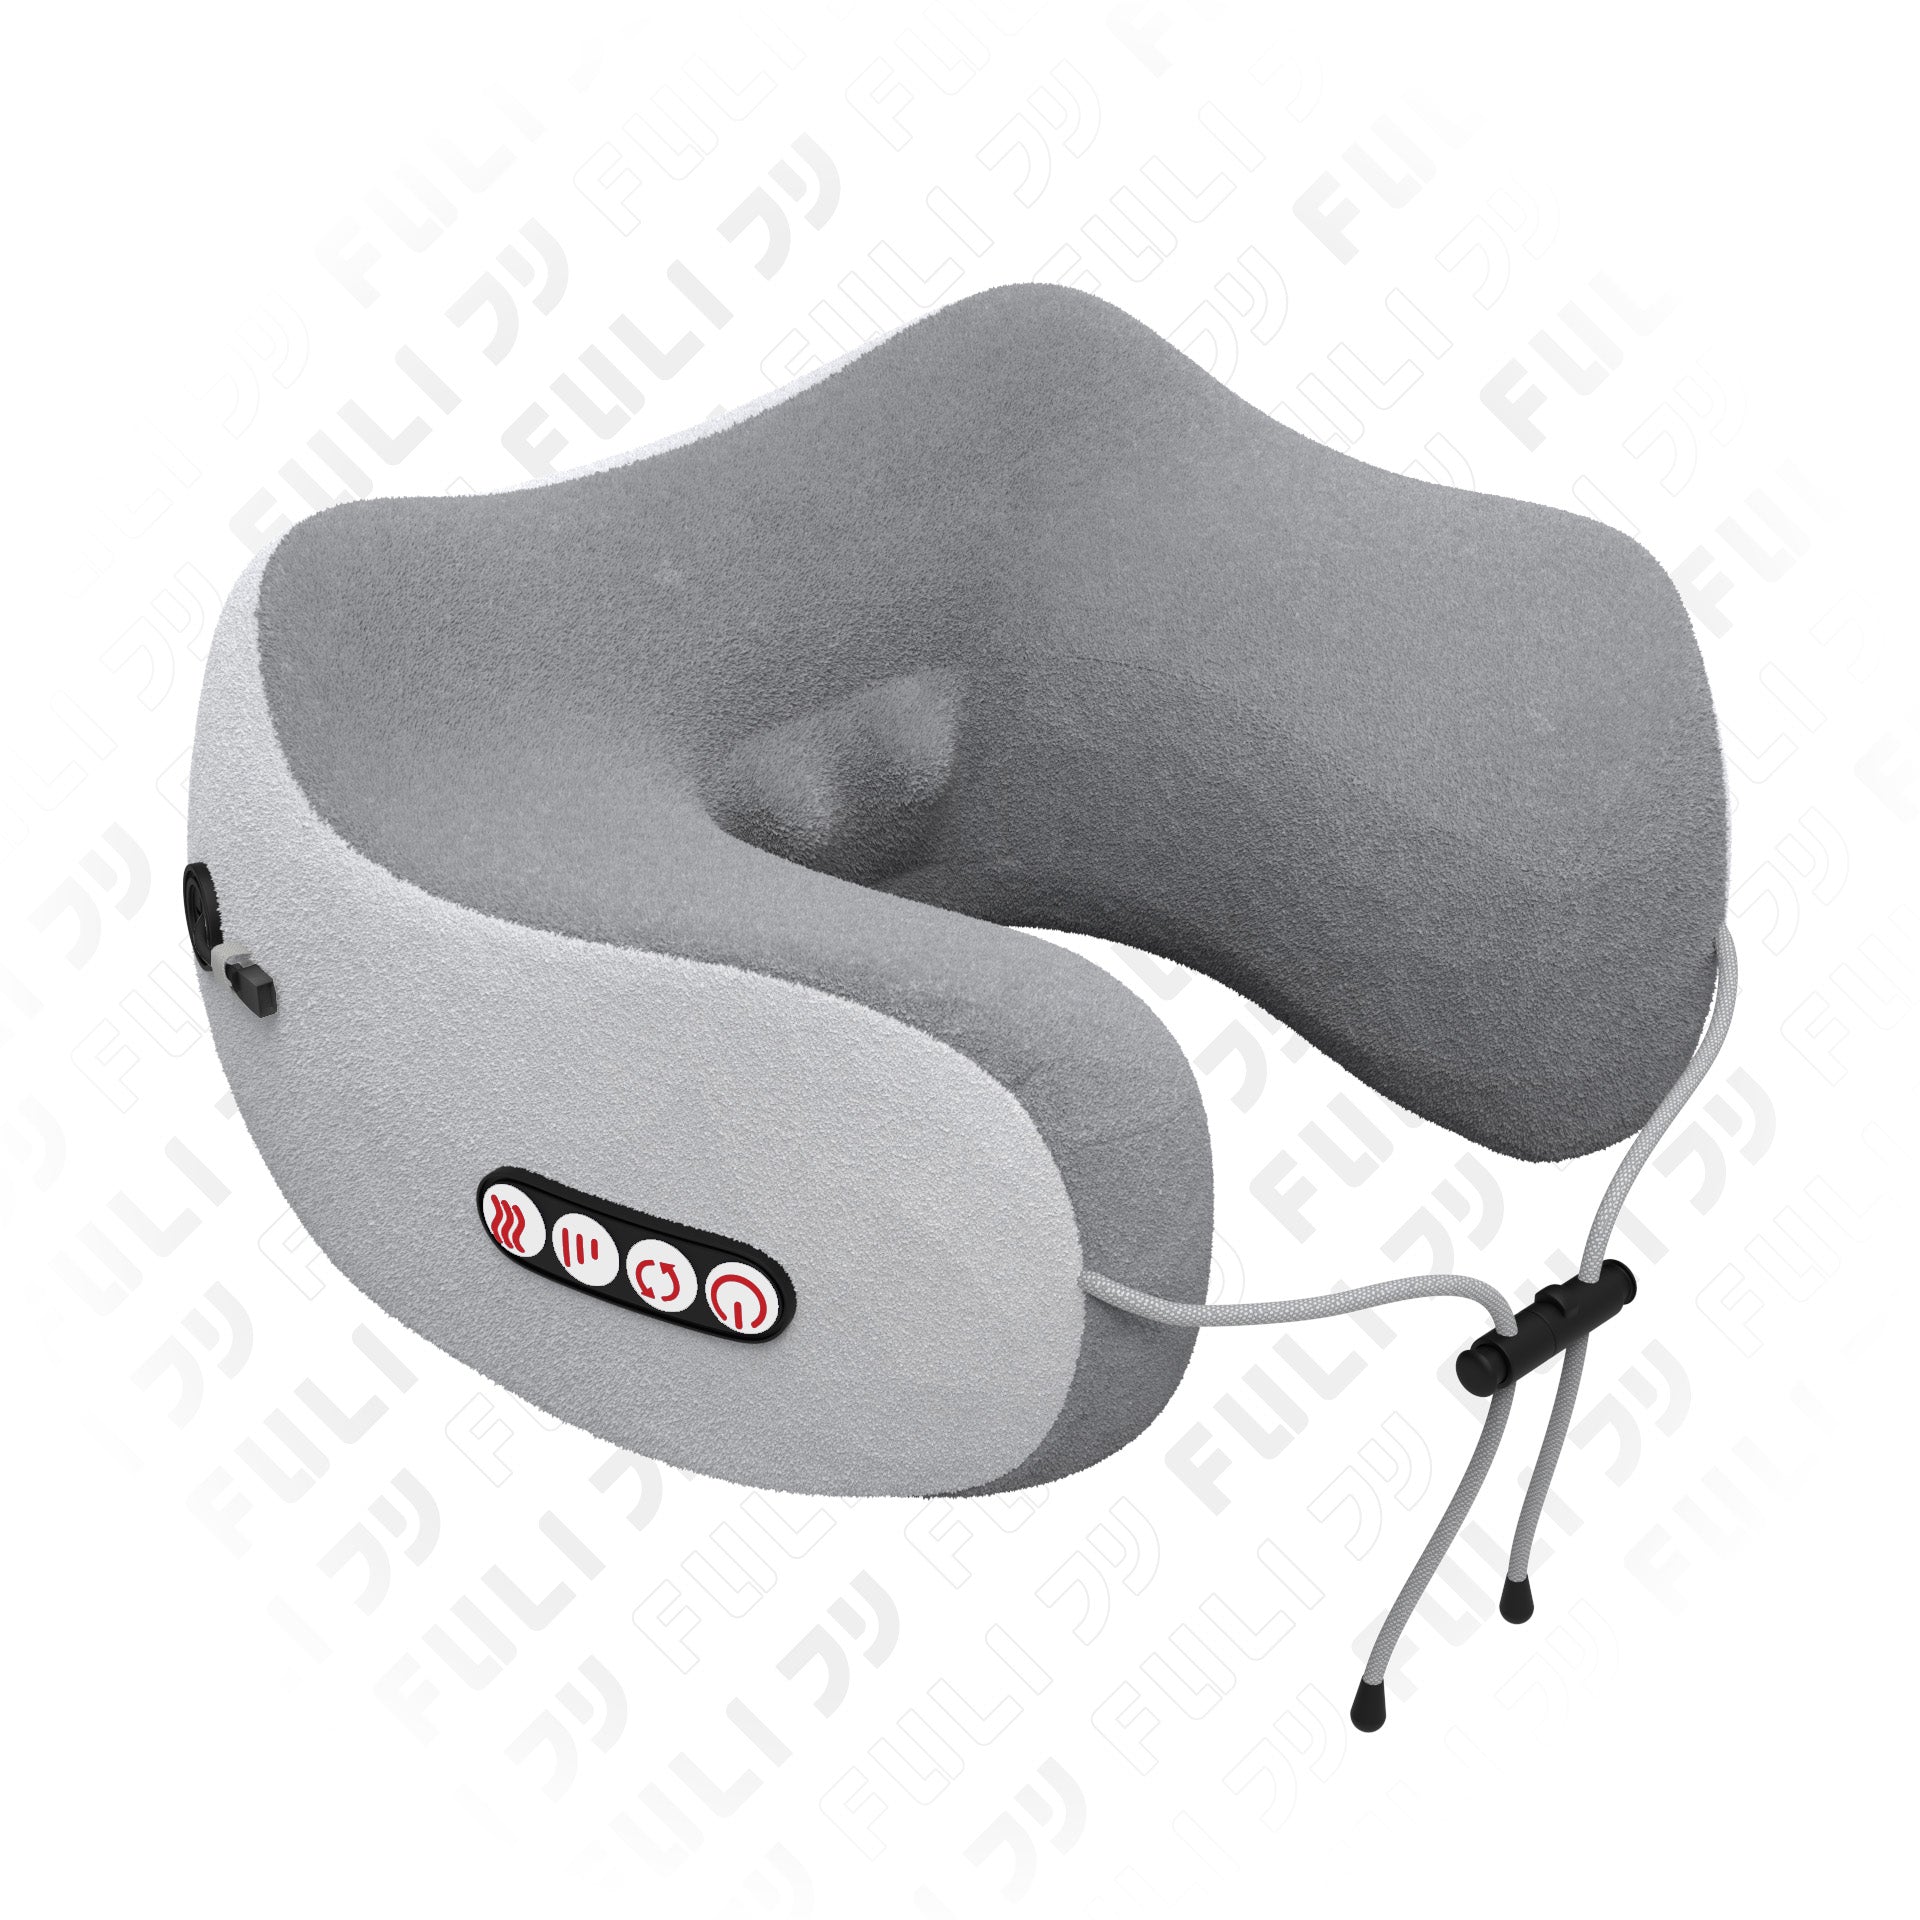 ซื้อ 1 แถม 1  | หมอนนวดคอไฟฟ้า | FULI Ergo Massage Neck Pillow